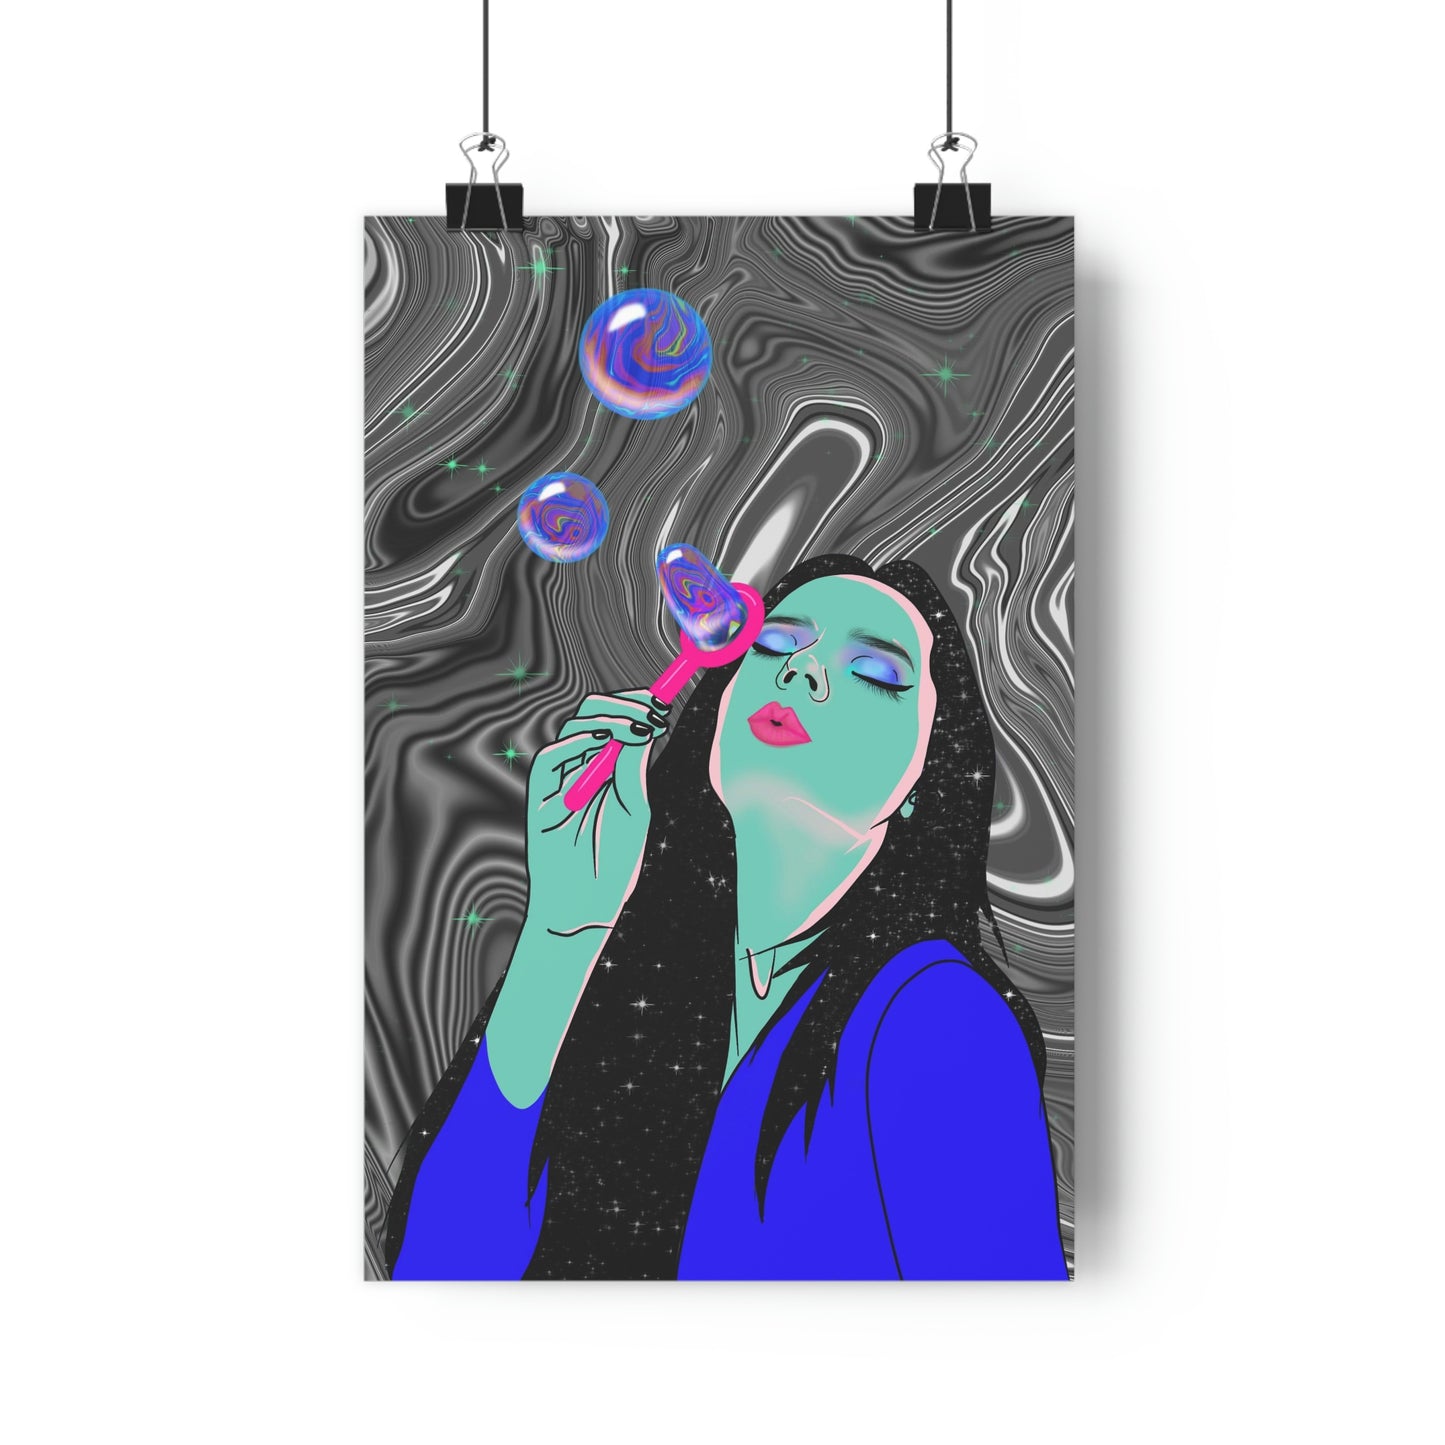 Blowing Bubbles - Giclée Art Print